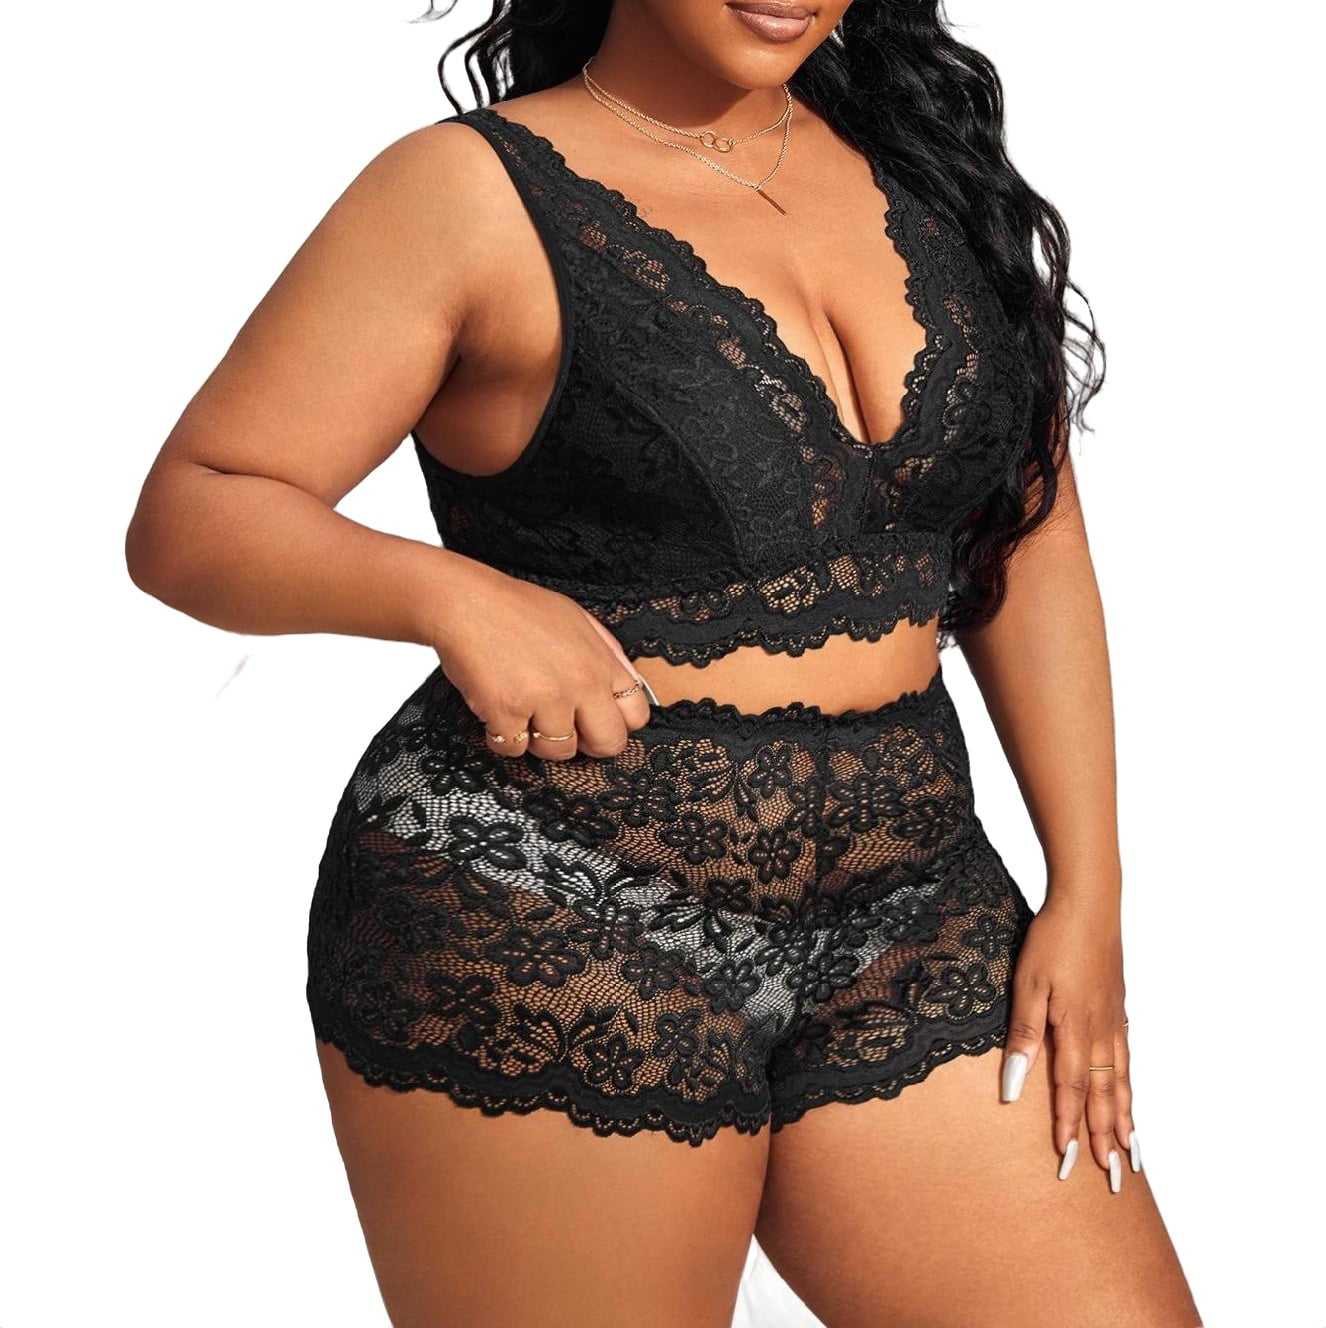 Sexy Black Plus Size Bra & Panty Sets (Women's) 